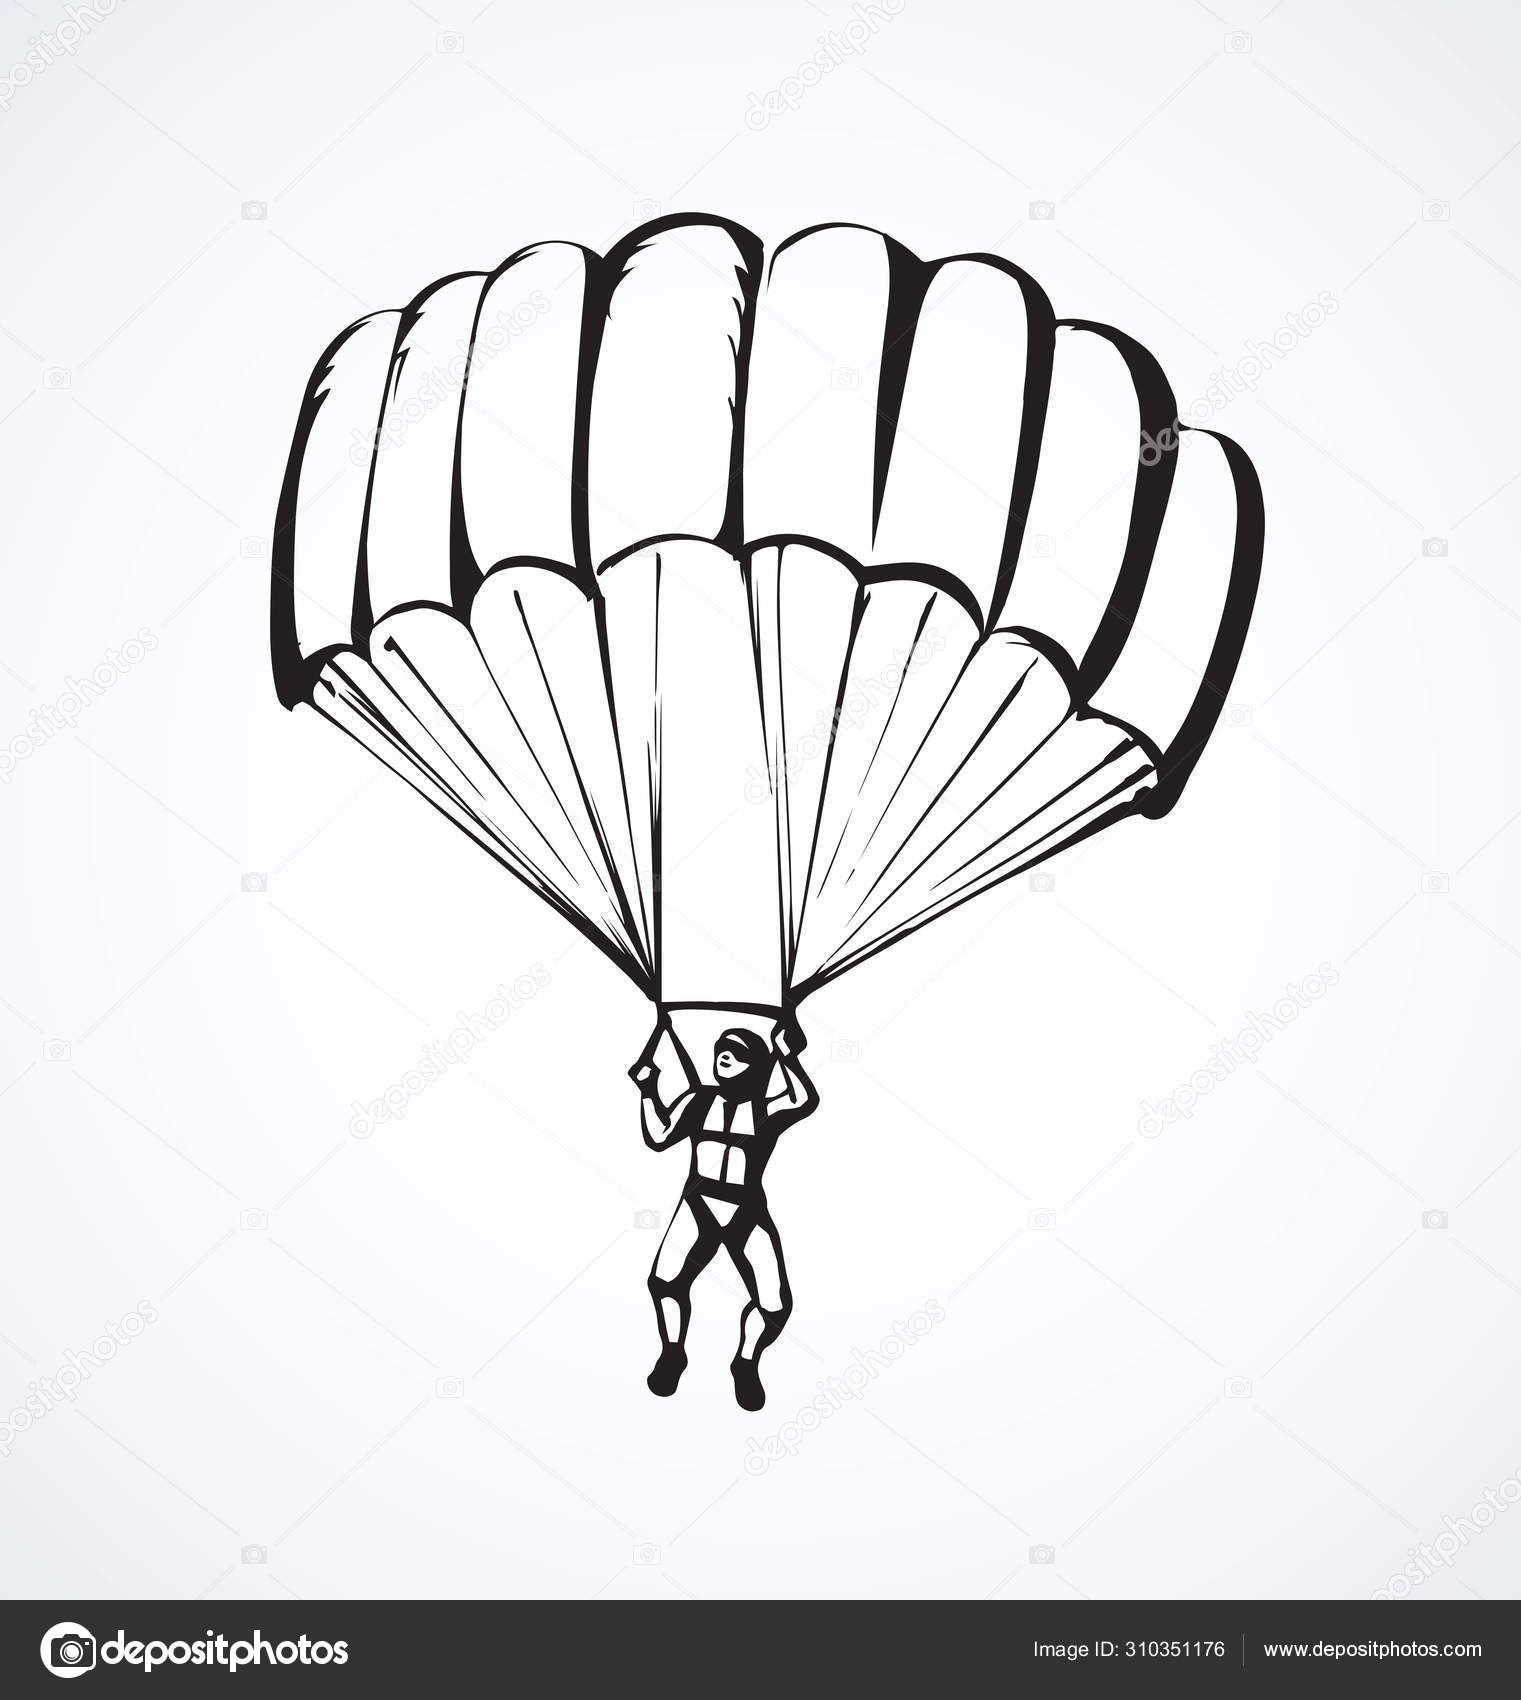 В аэроклубе сообщили, что при крушении L-410 выжили только парашютисты в хвосте самолета